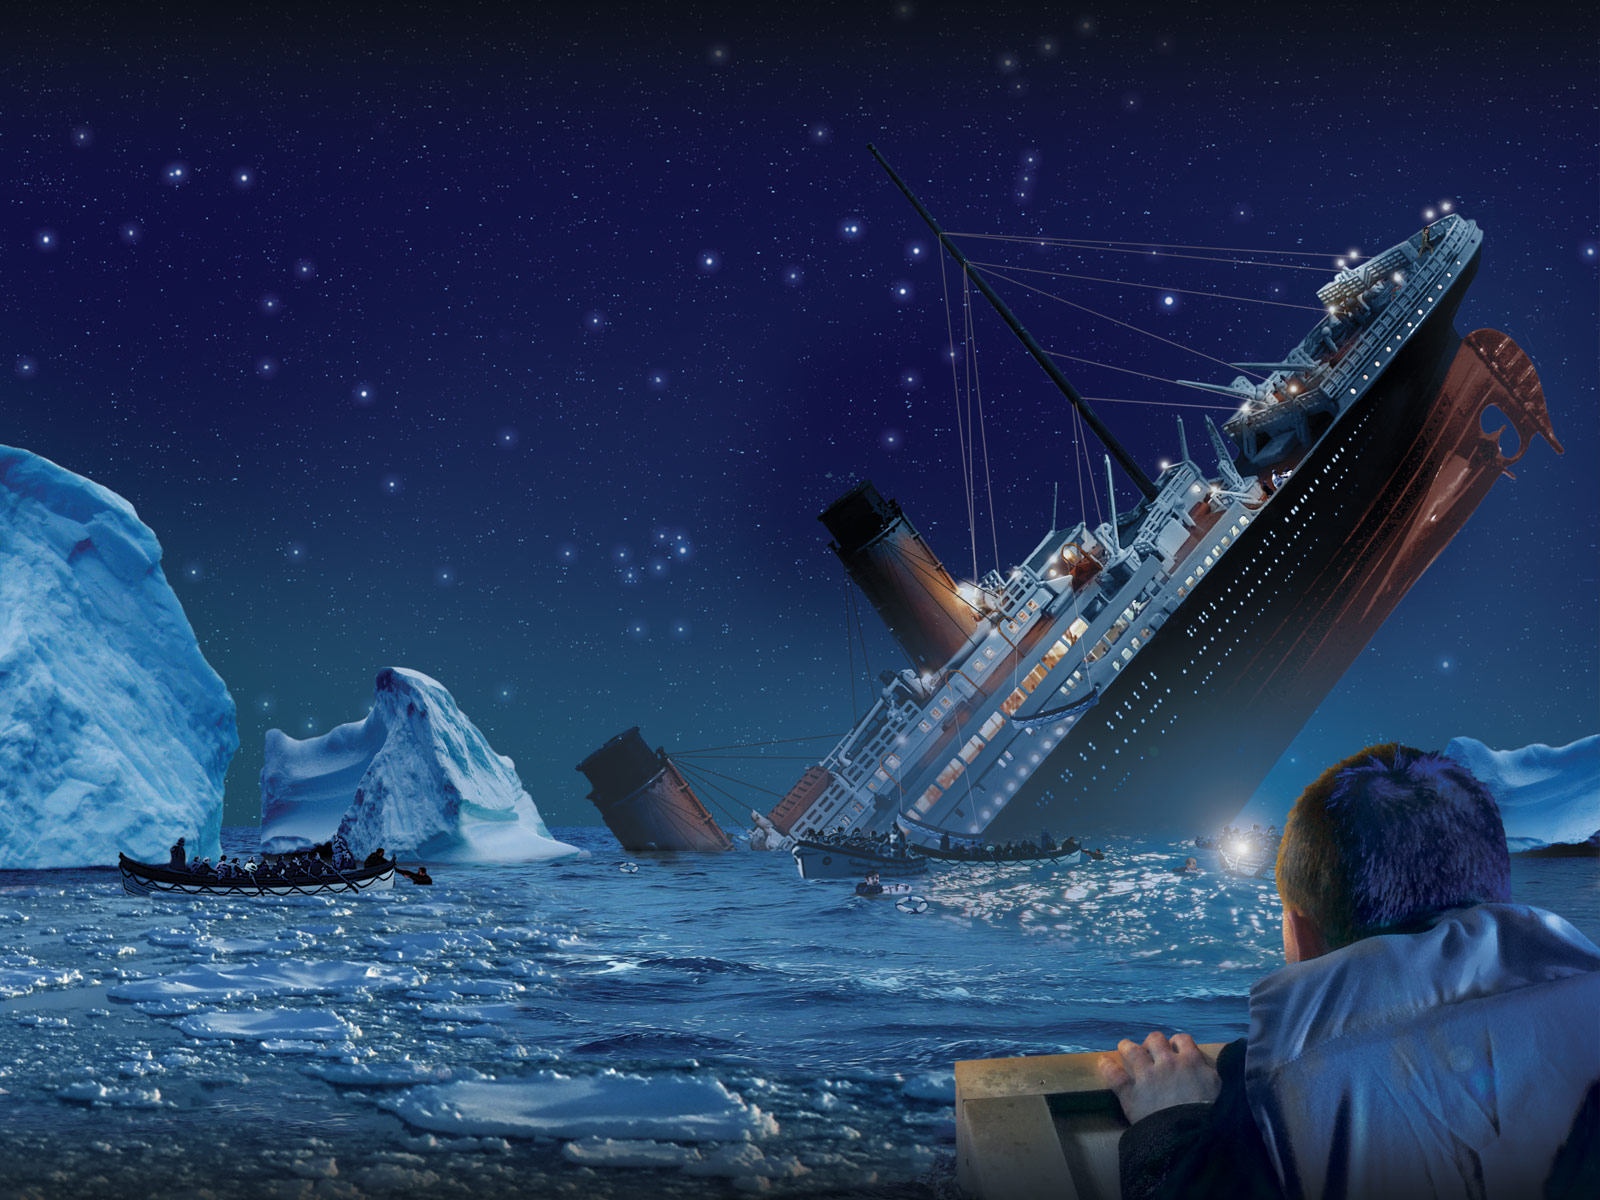 Айсберг и Титаник